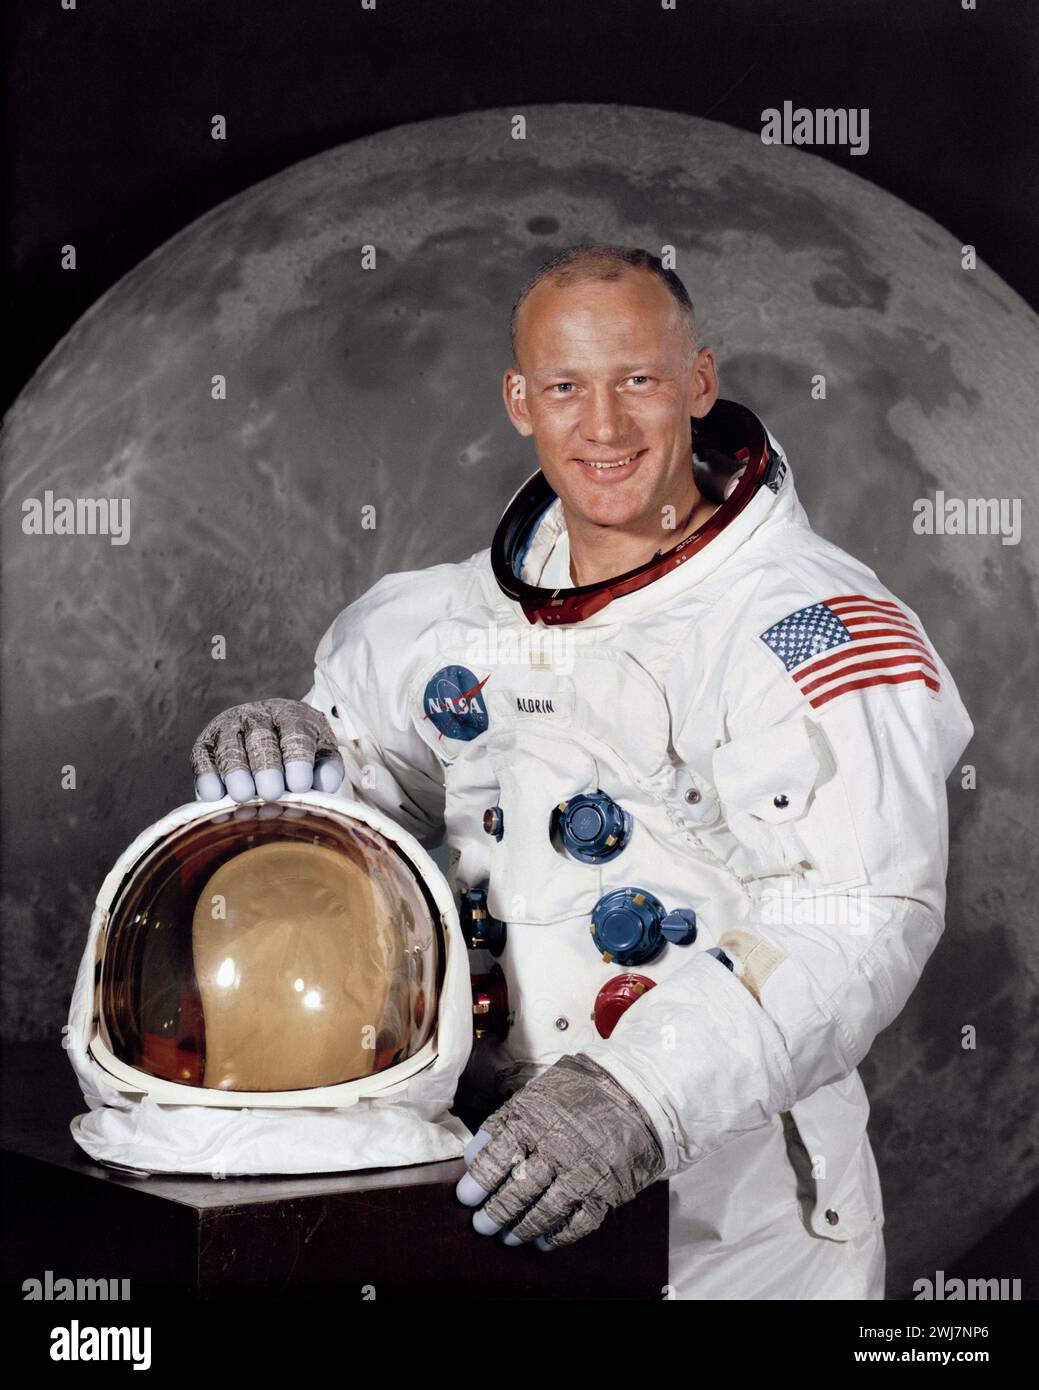 Buzz Aldrin. Retrato del astronauta estadounidense y uno de los tripulantes del primer aterrizaje tripulado en la luna, Buzz Aldrin (nacido en Edwin Eugene Aldrin Jr.; 1930), foto oficial de la NASA, 1968 Foto de stock